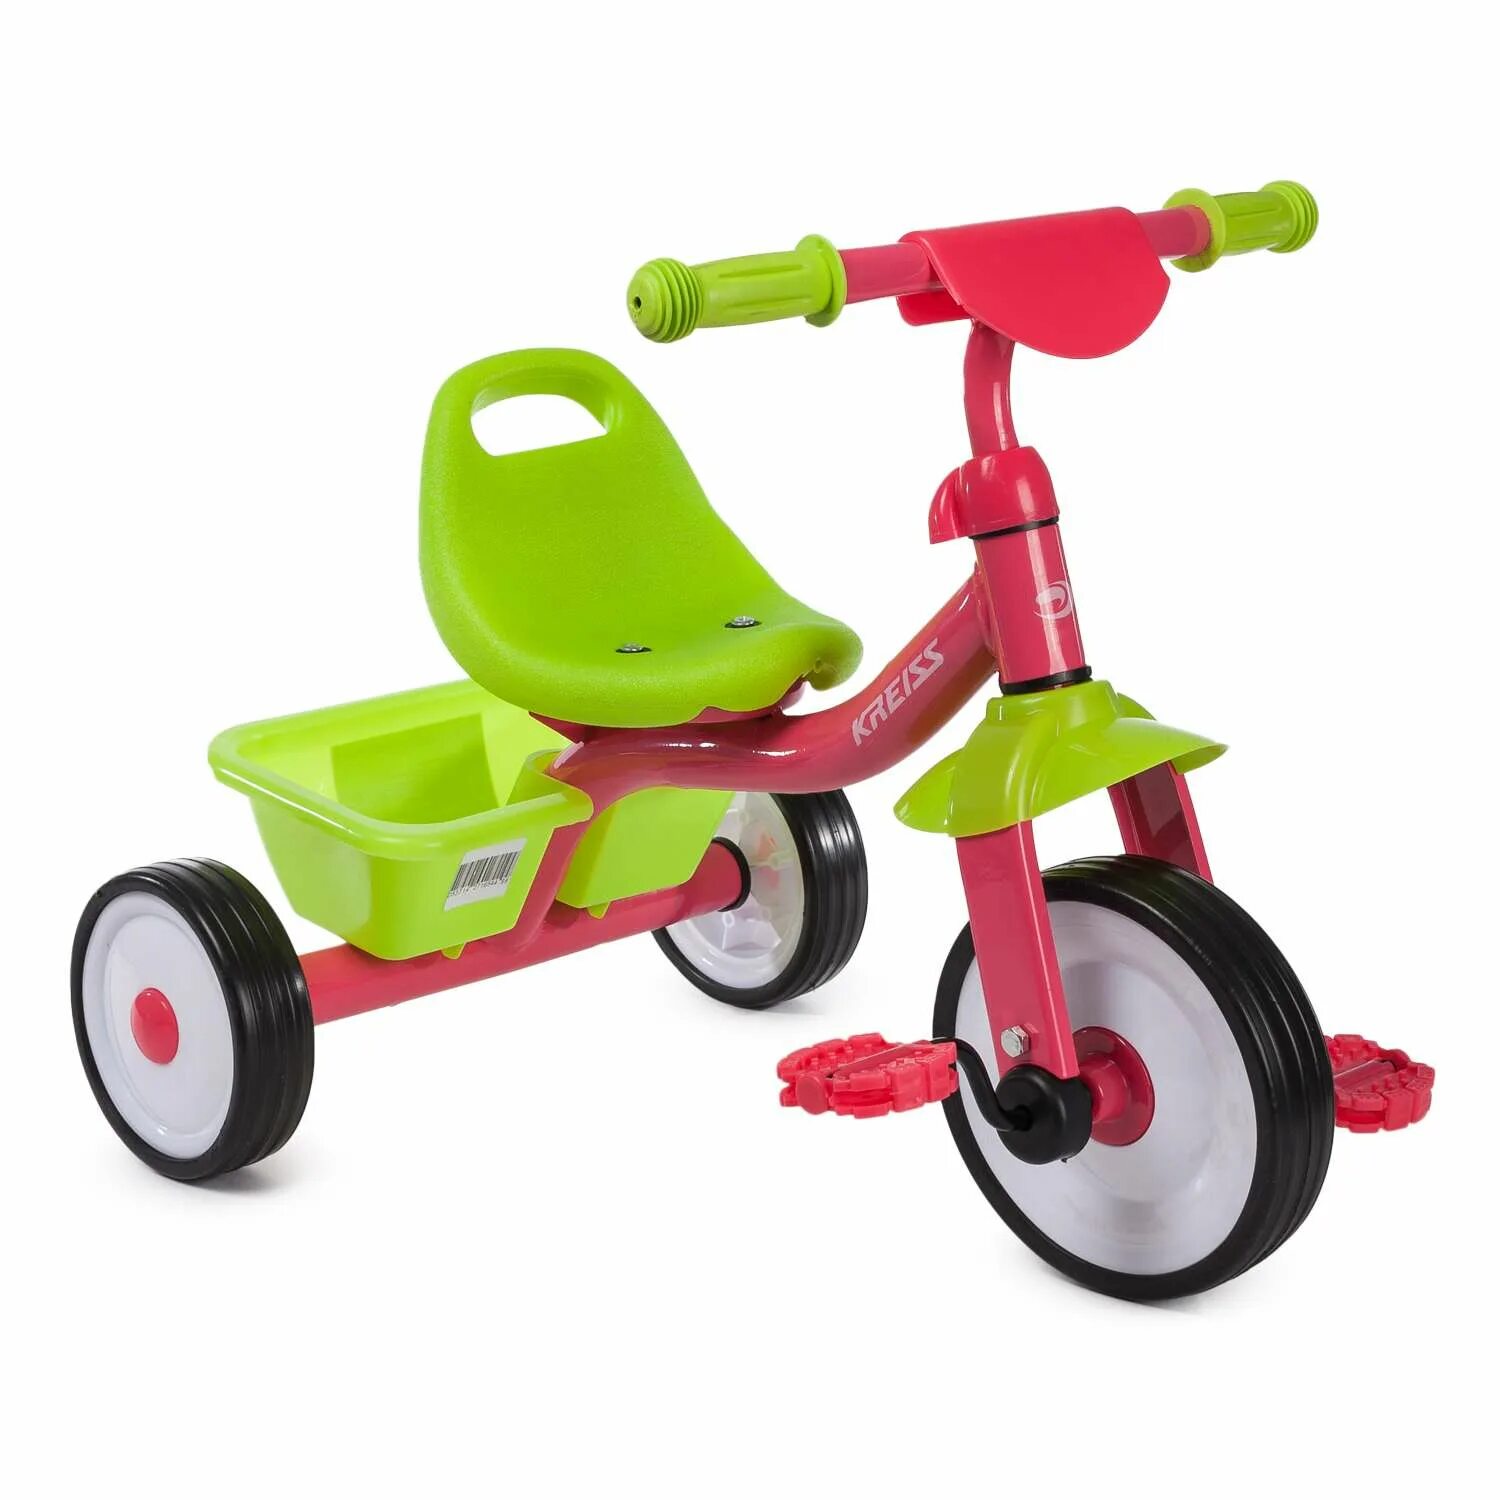 Kreiss велосипед трехколесный с ручкой. Велосипед Крейс трехколесный. Kreiss велосипед трехколесный. Велосипед Kreiss розово-зеленый. Трехколесный велосипед Kreiss зеленый.